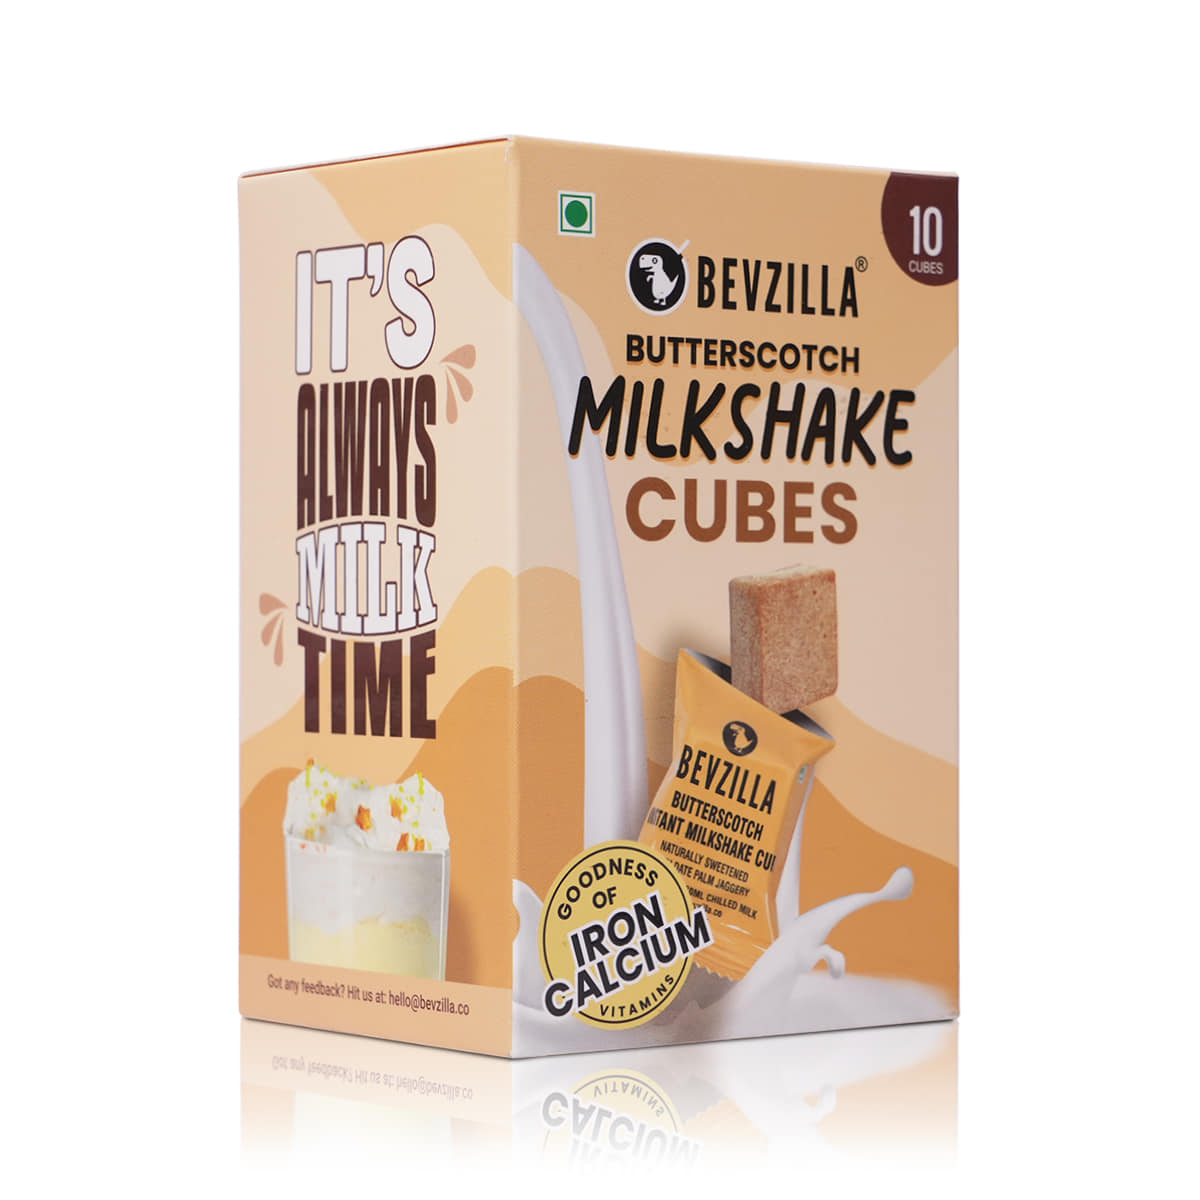 10 Butterscotch Milkshake Cubes